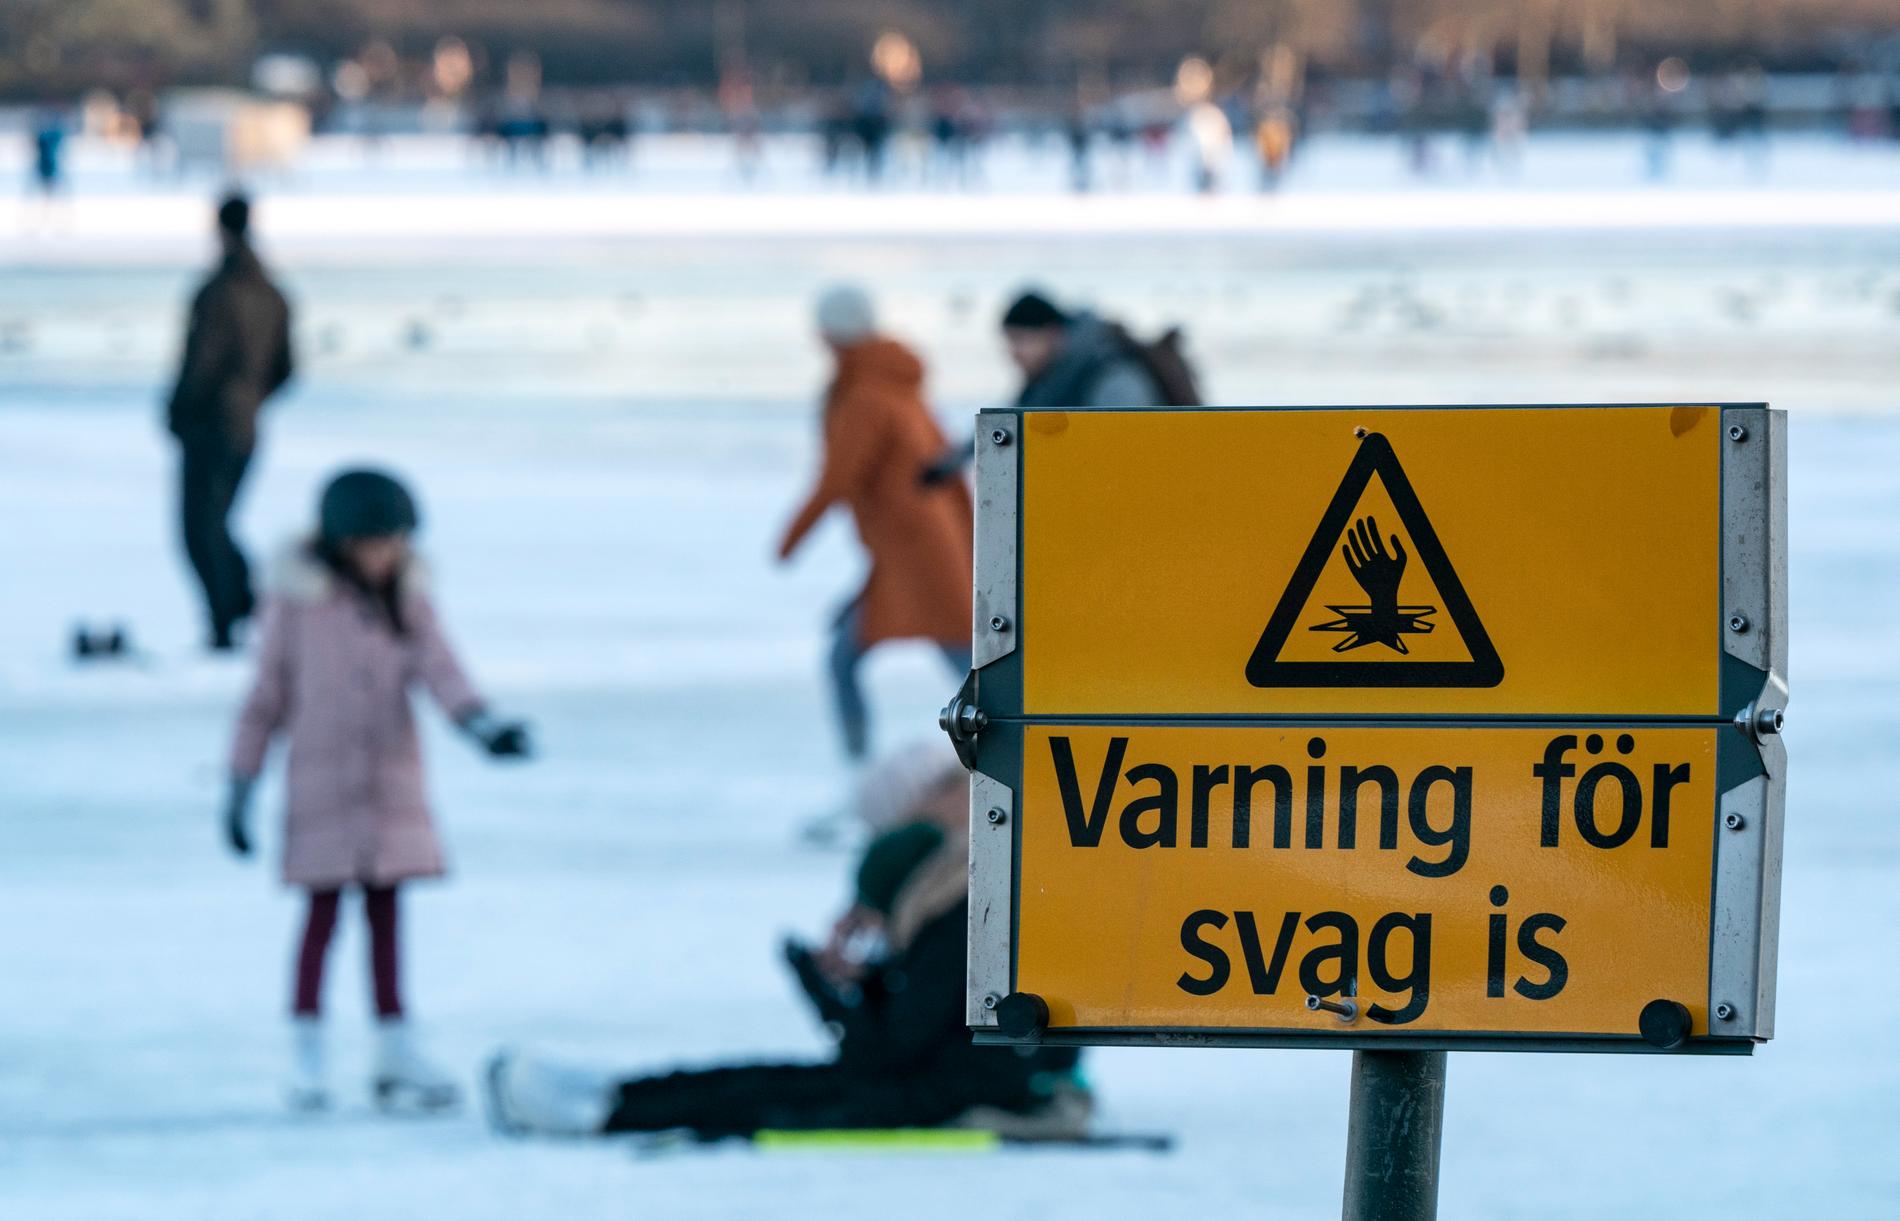 I helgen var det många i Malmö som åkte skridskor på stadens isar – men varmare väder väntar och isarna är inte helt säkra.